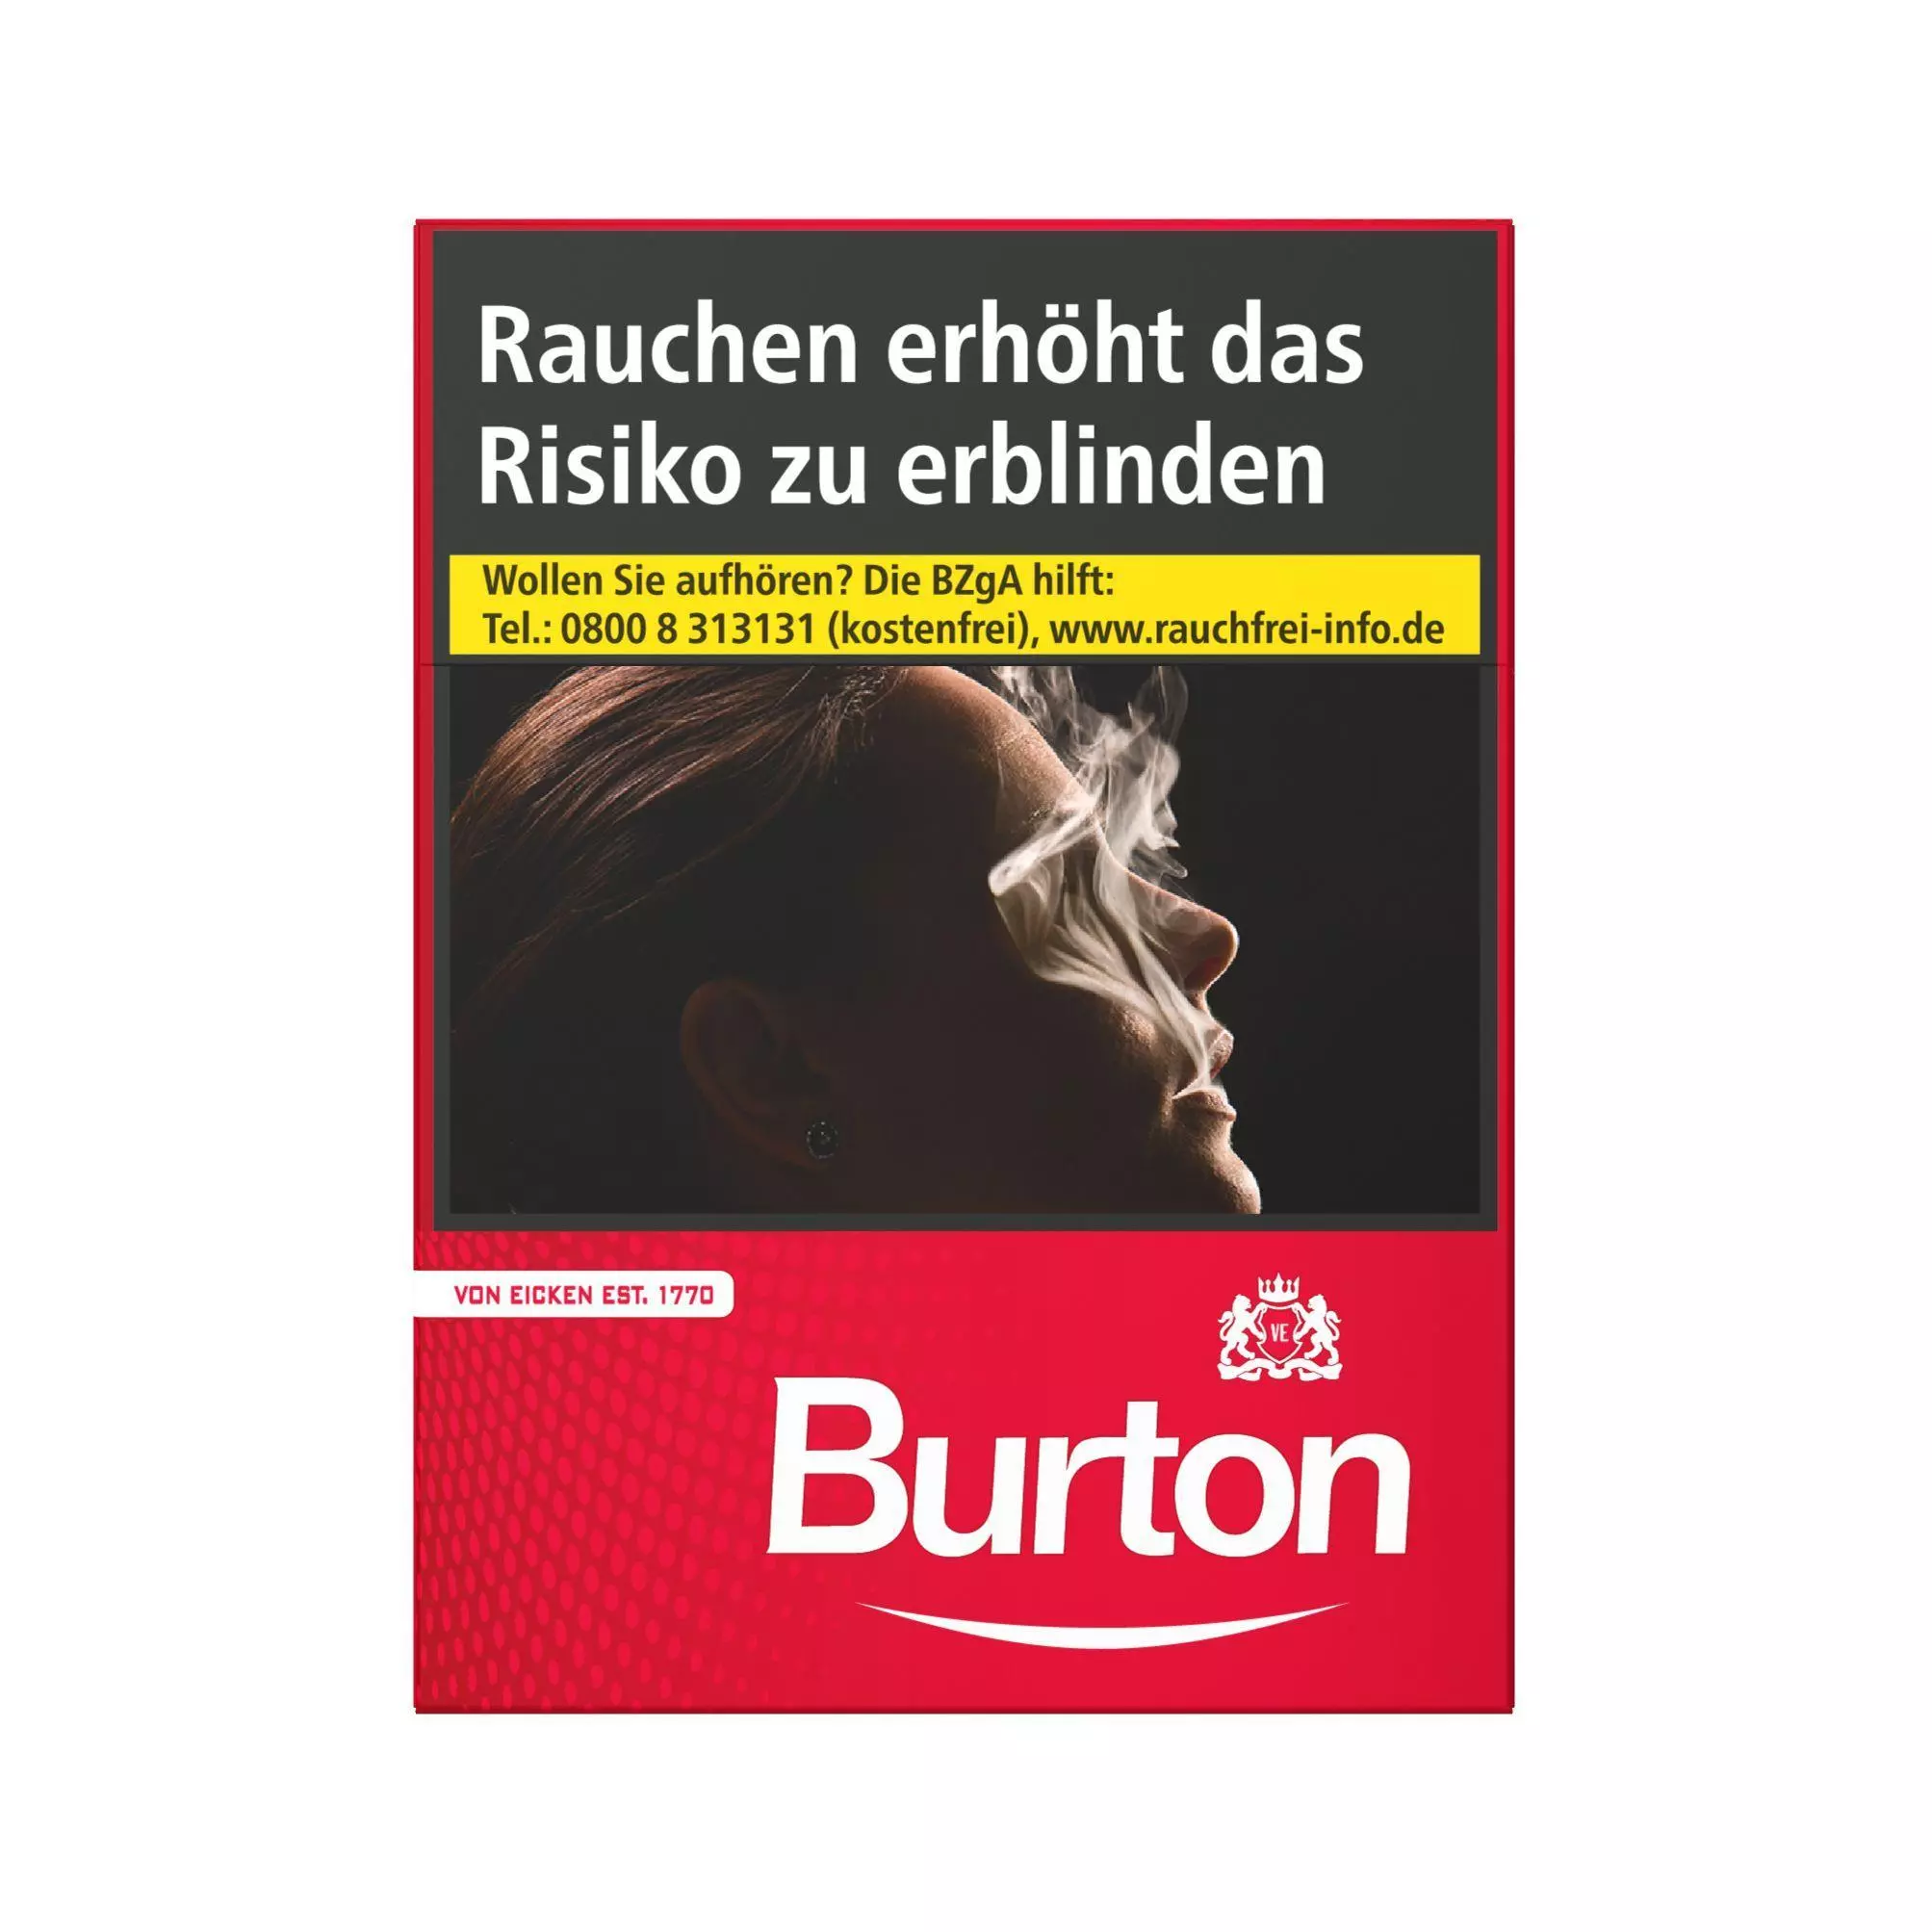 Burton Original Duo Pack 4 x 58 Zigaretten